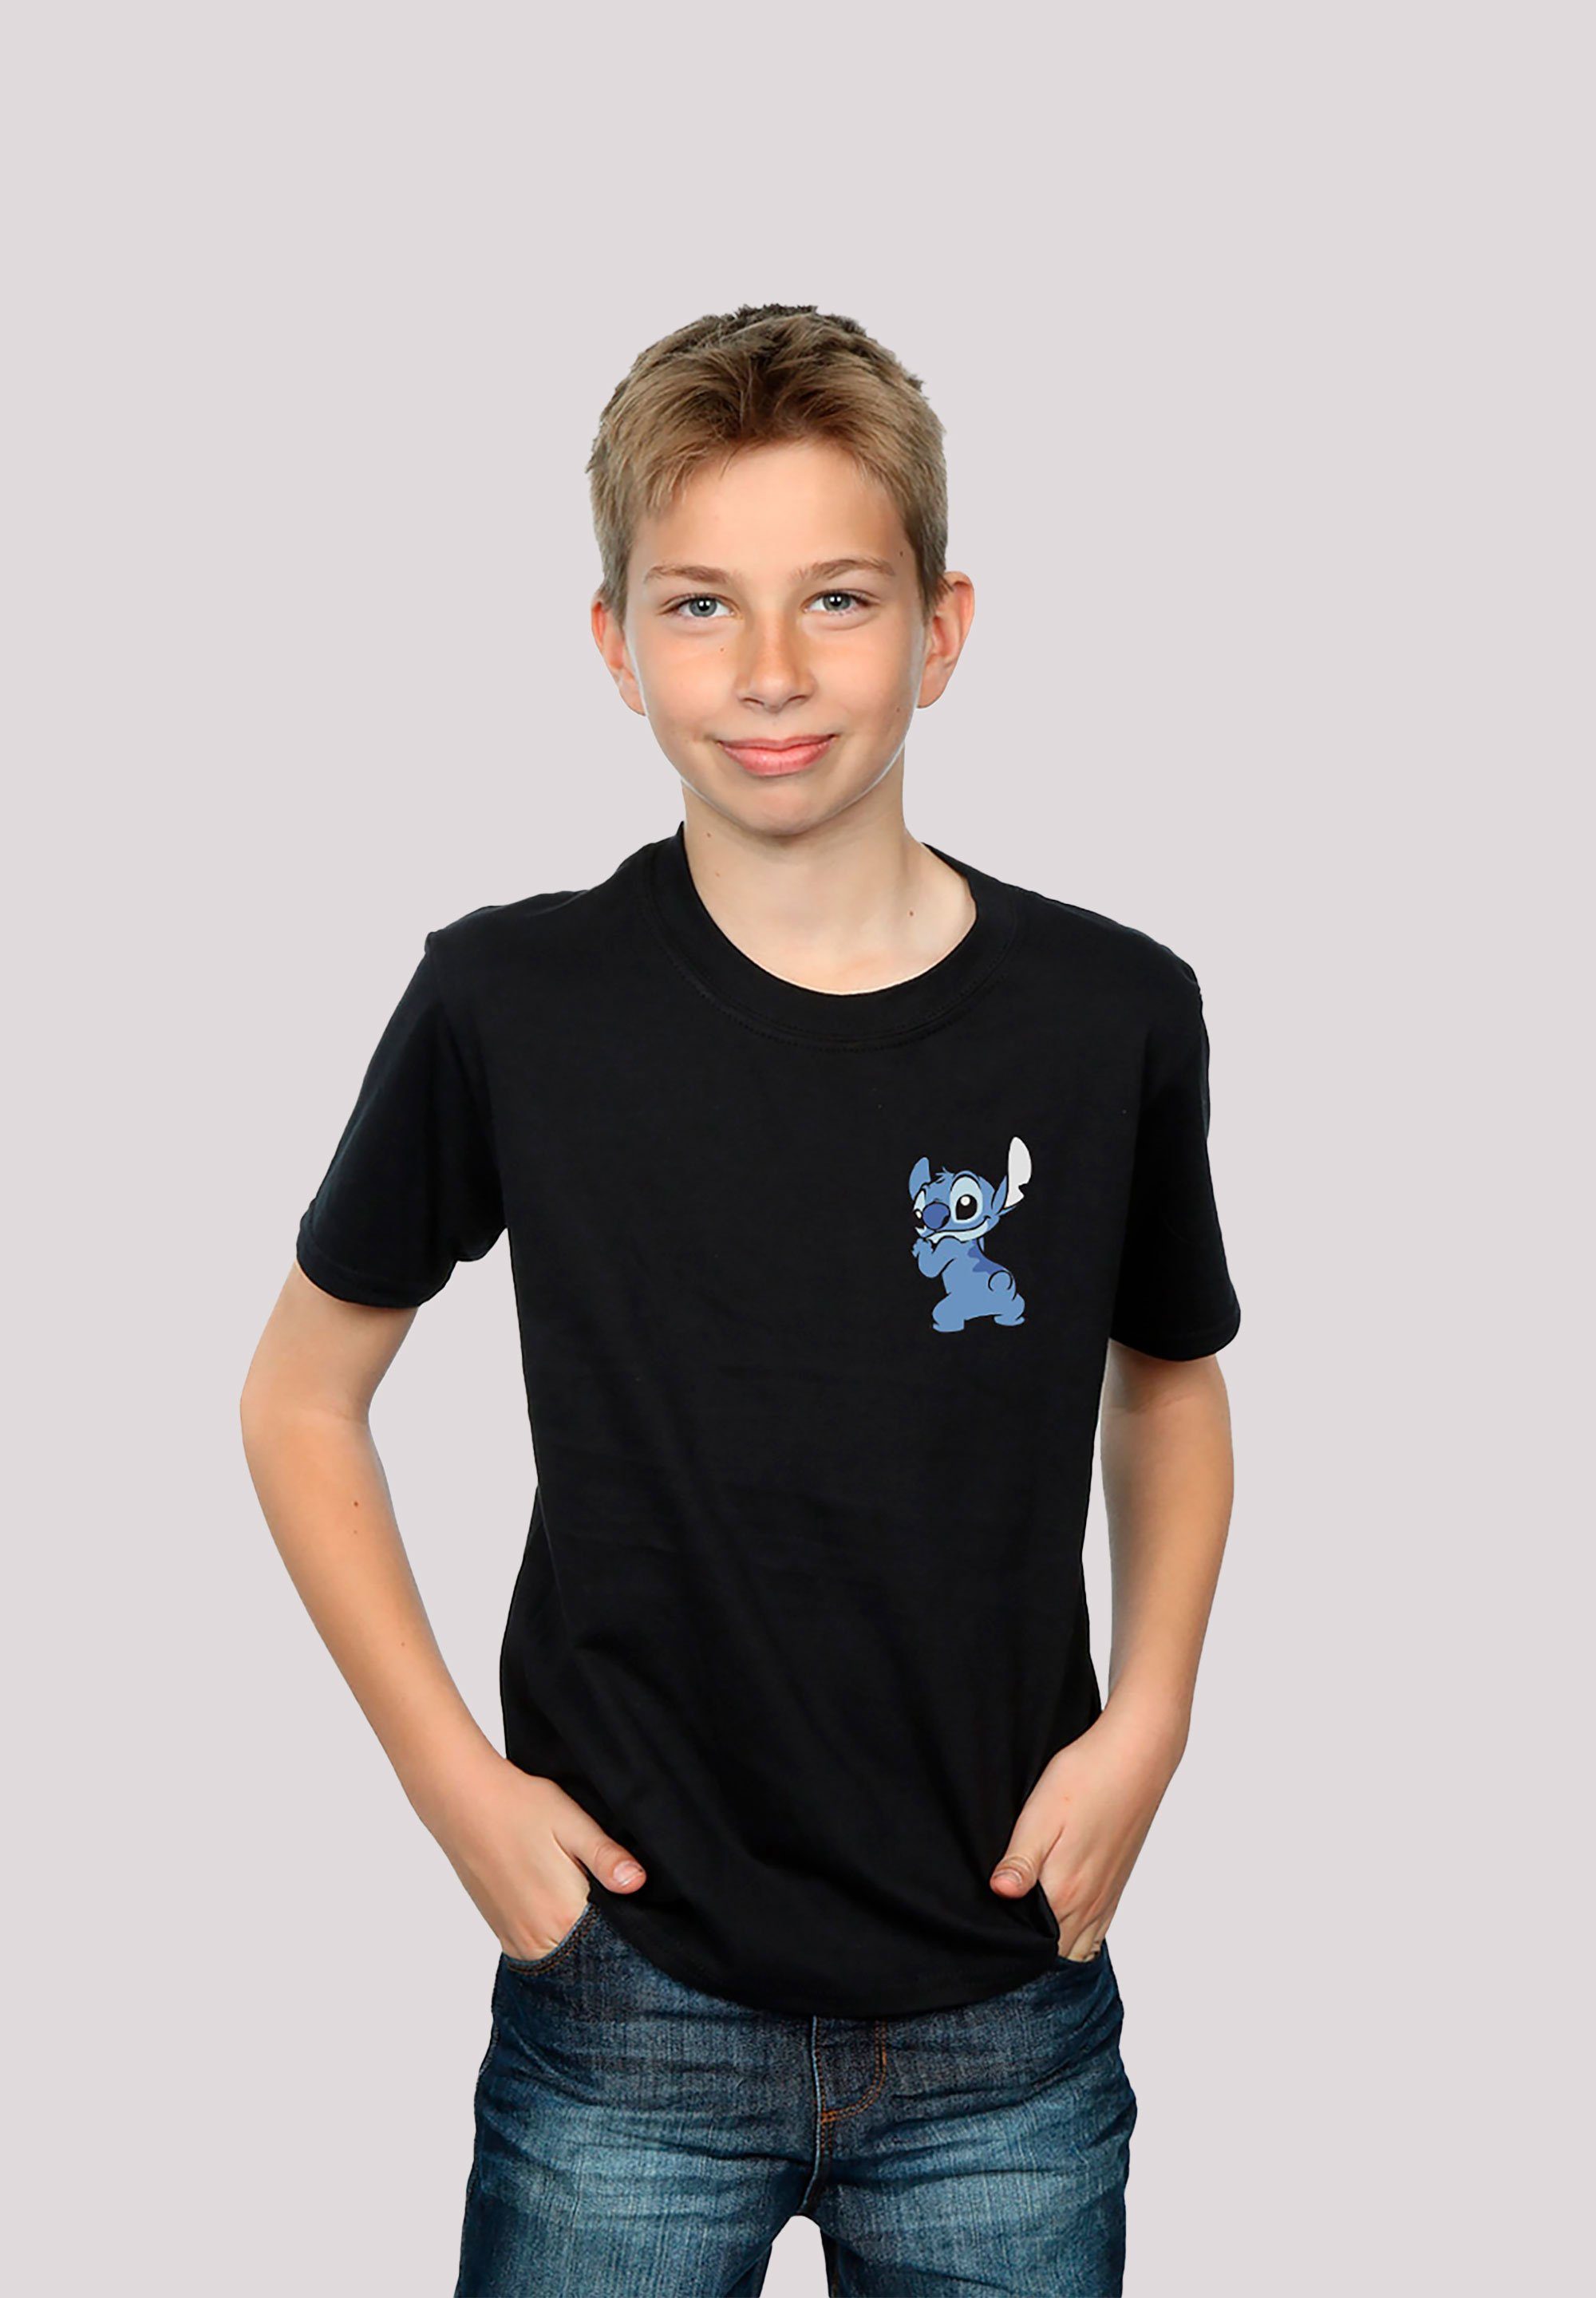 F4NT4STIC T-Shirt Disney Lilo And Stitch Unisex Kinder,Premium Merch,Jungen,Mädchen,Bedruckt schwarz